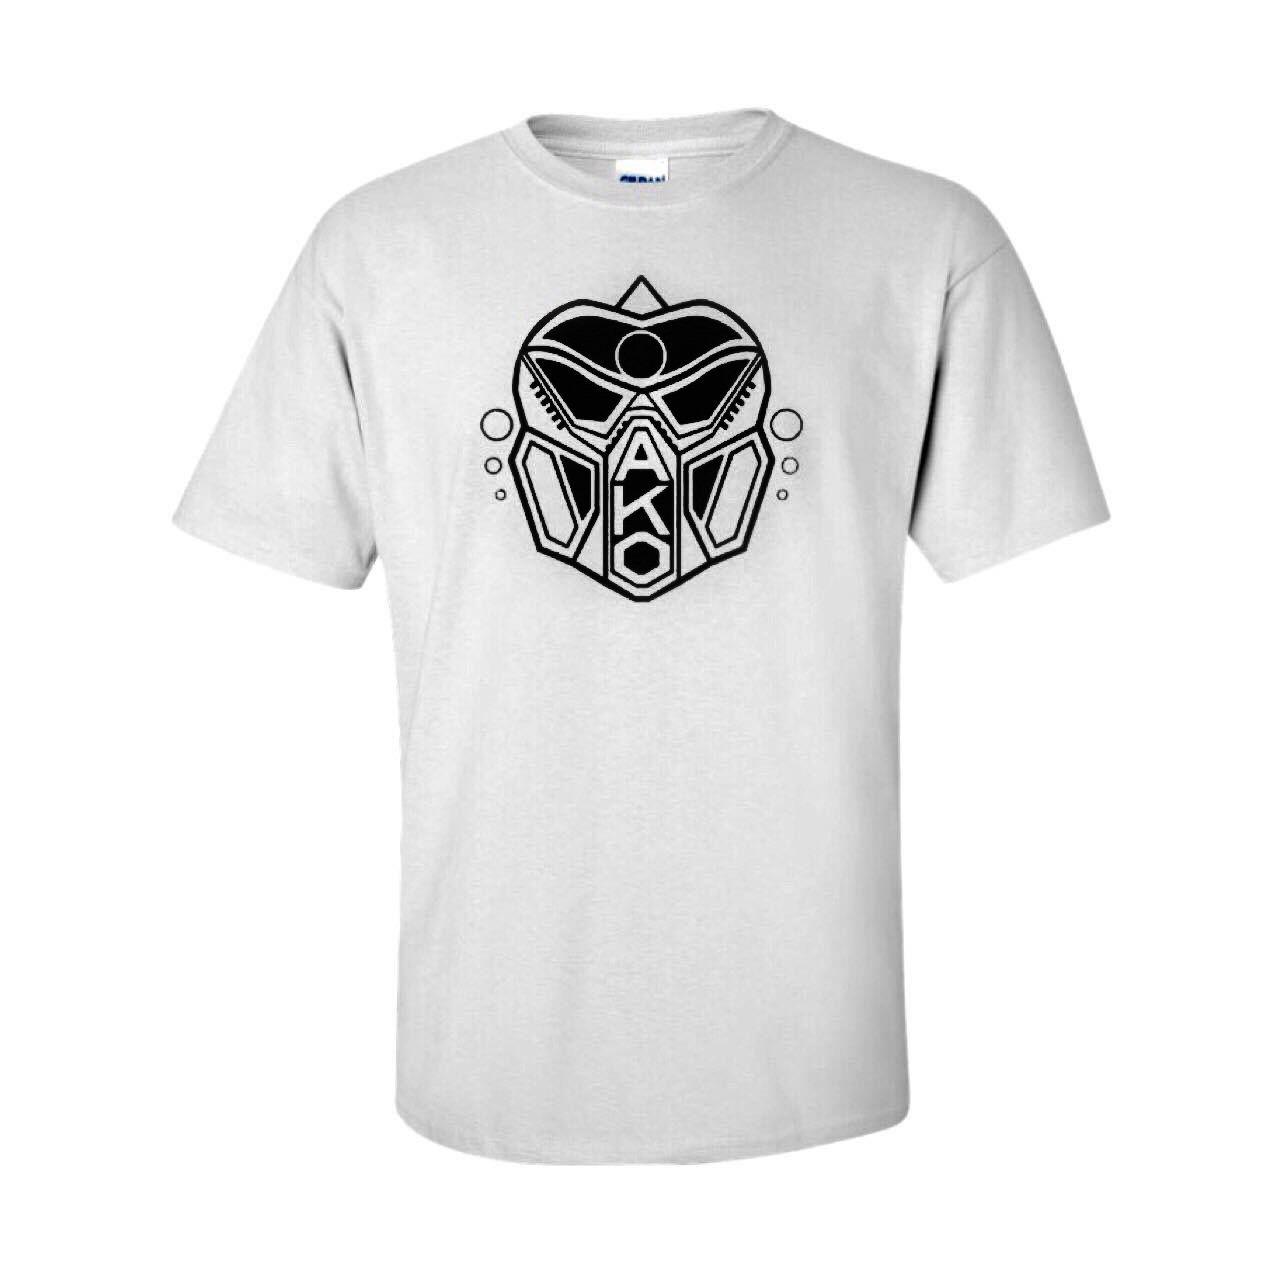 Ako Logo - ako beatz white t-shirt with vinyl printed black ako logo